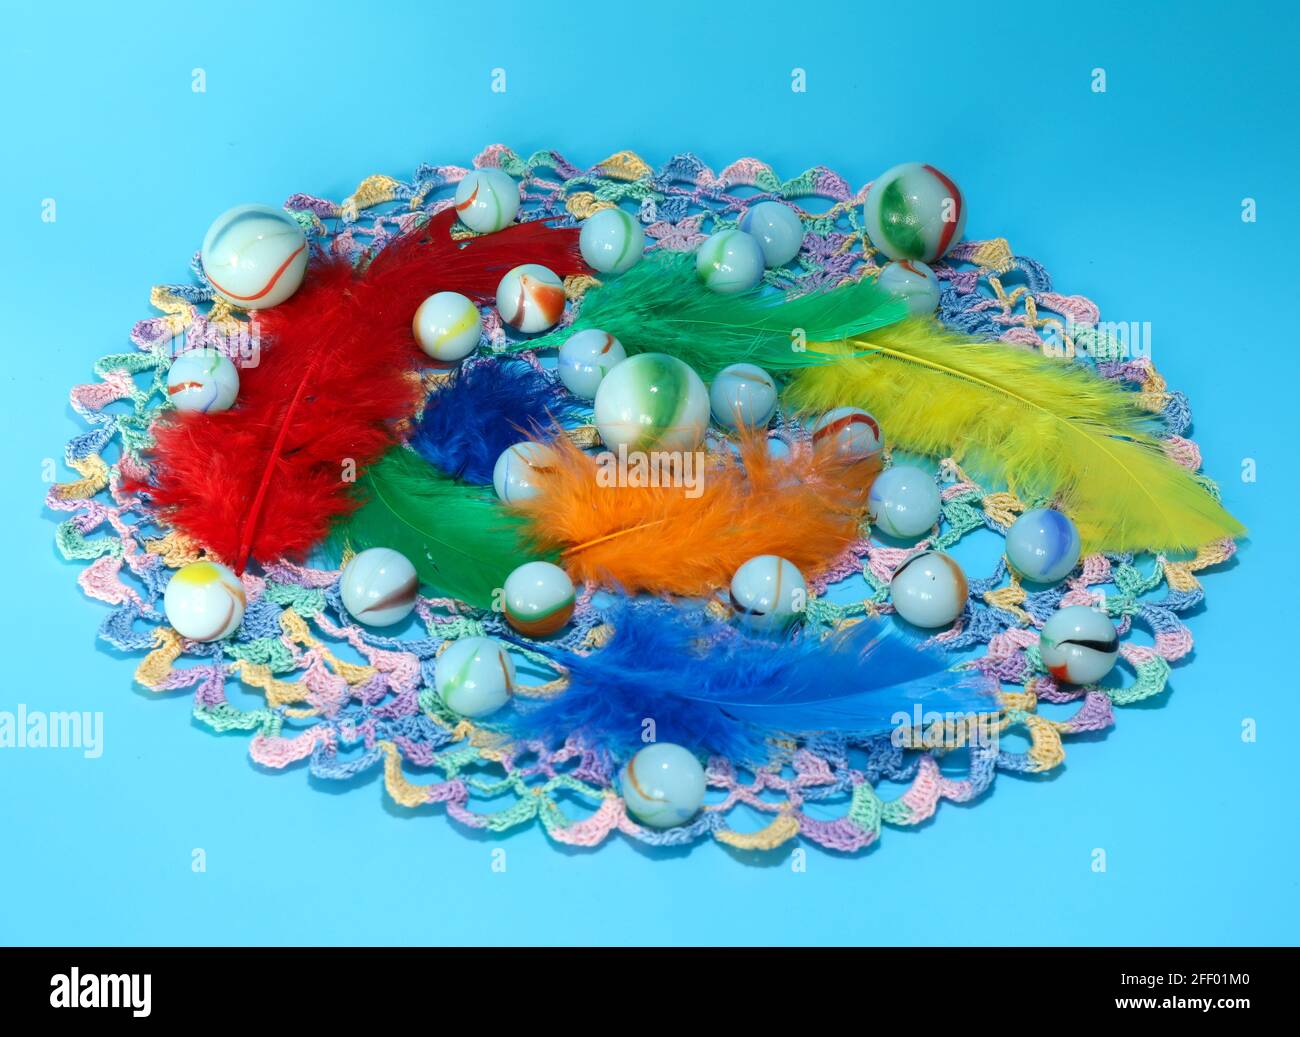 Une image de billes de verre et de plumes colorées Banque D'Images